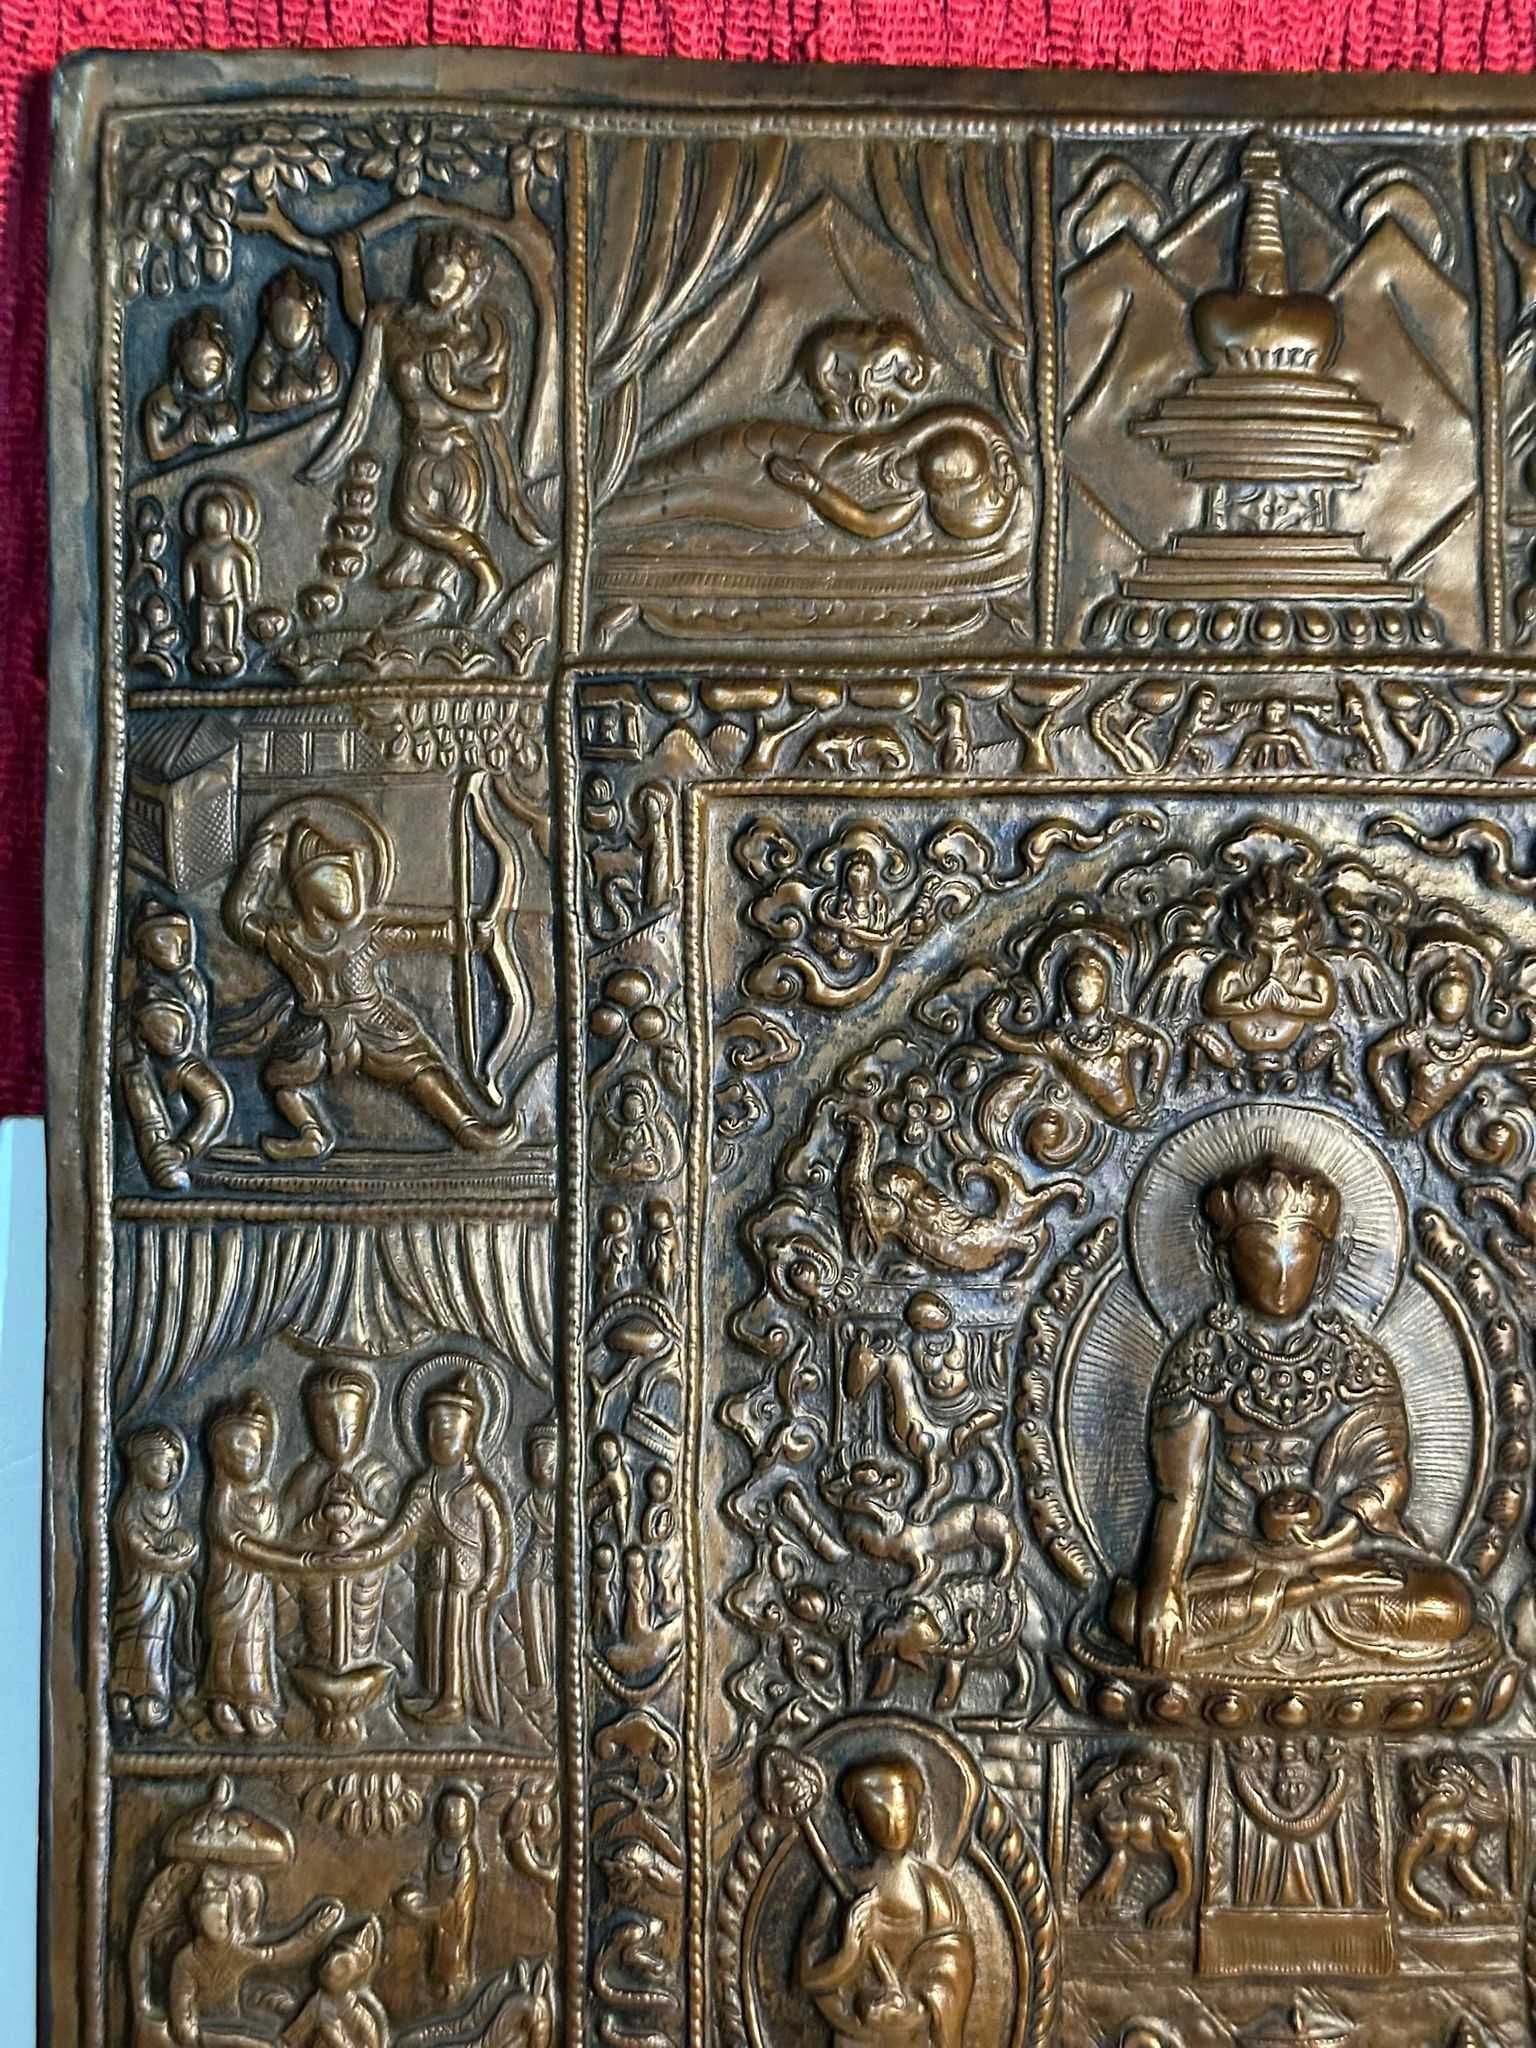 TABLOU IN CUPRU - Viata lui Shakyamuni Buddha - Repousse - Sec. 19 !